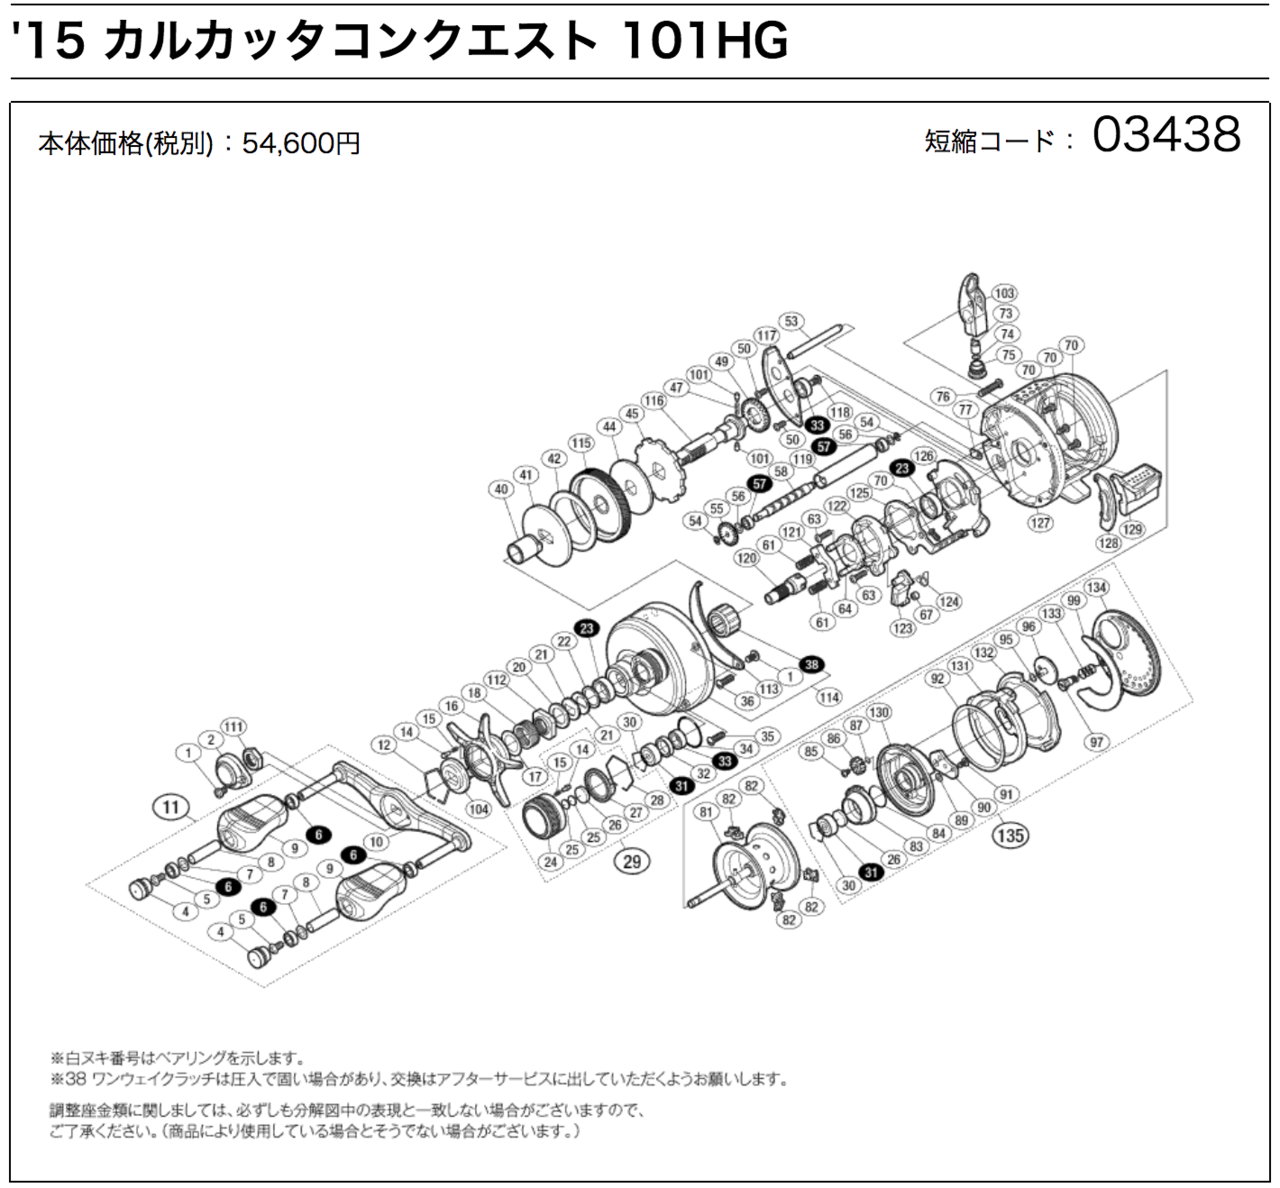 Ftインプレッション 037 15カルカッタコンクエスト101hgをエキサイティングにしてみました Taku Onuma Note